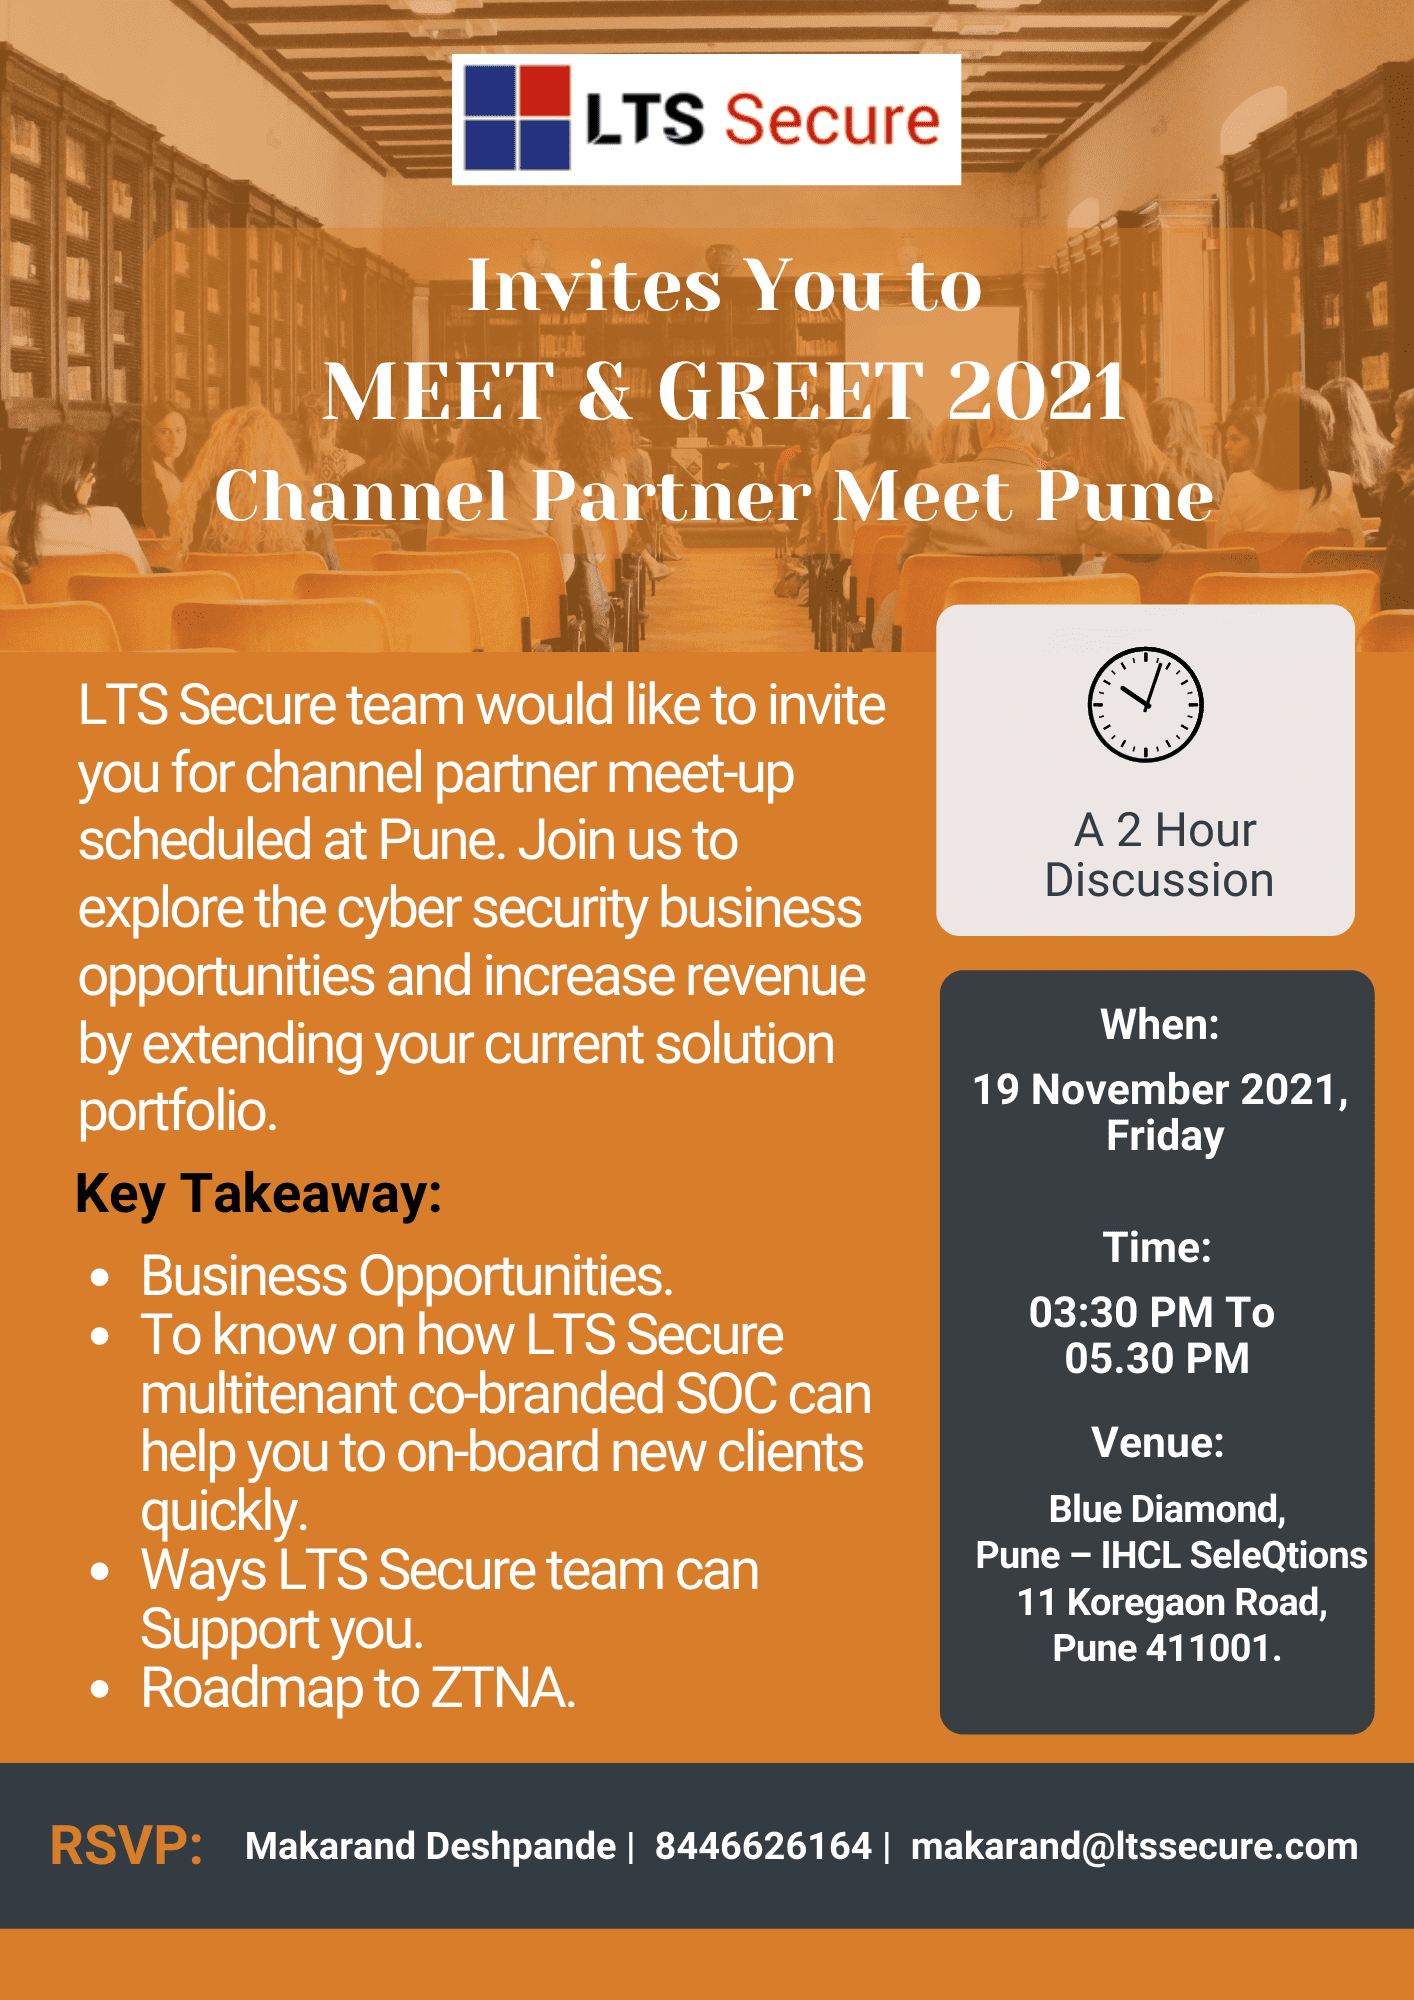 Meet and greet 2021 channel partner meet Pune